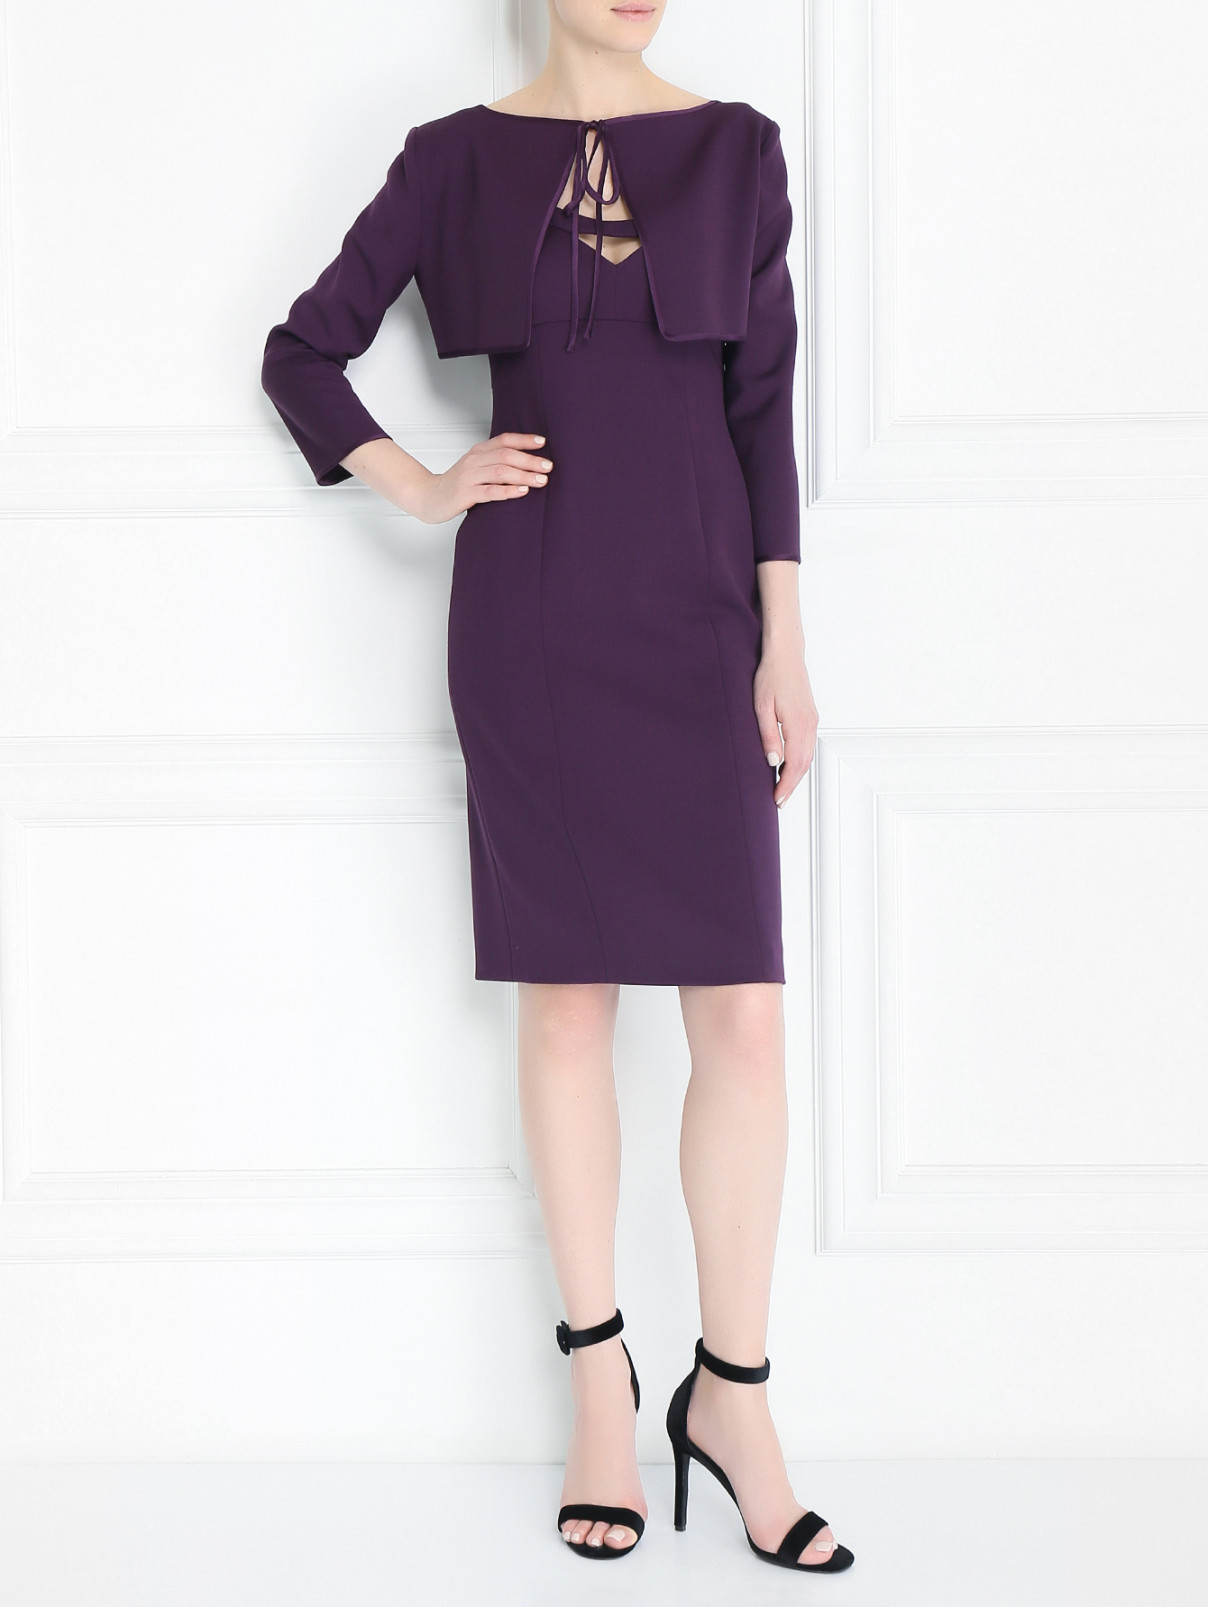 Платье-мини из шерсти с рукавами 3/4 Alberta Ferretti  –  Модель Общий вид  – Цвет:  Фиолетовый